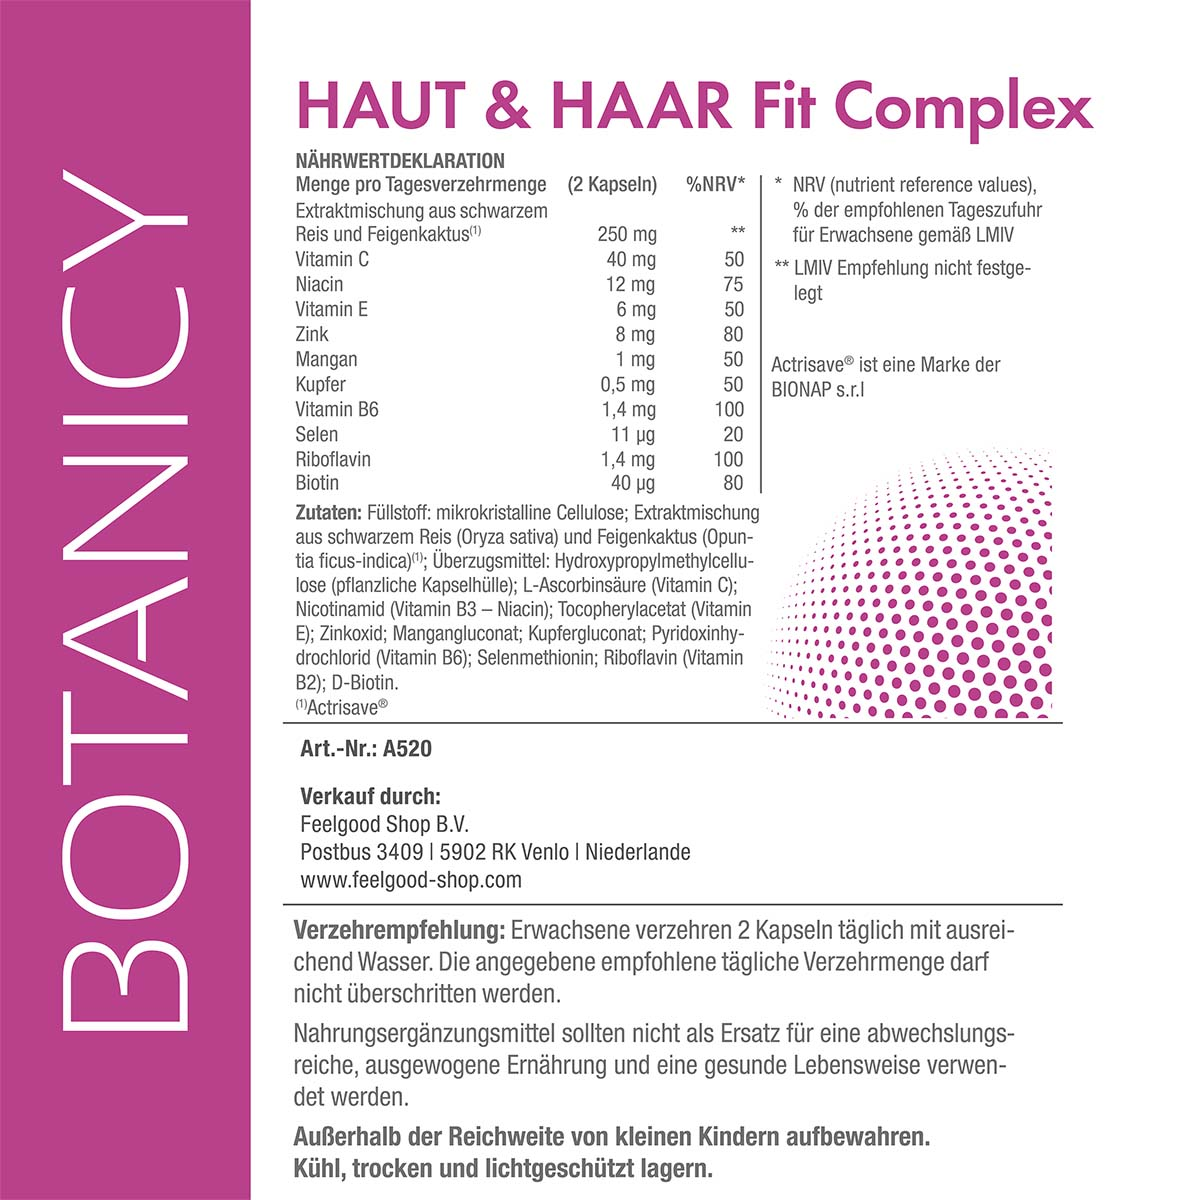 HAUT & HAAR Fit Complex mit Actrisave®